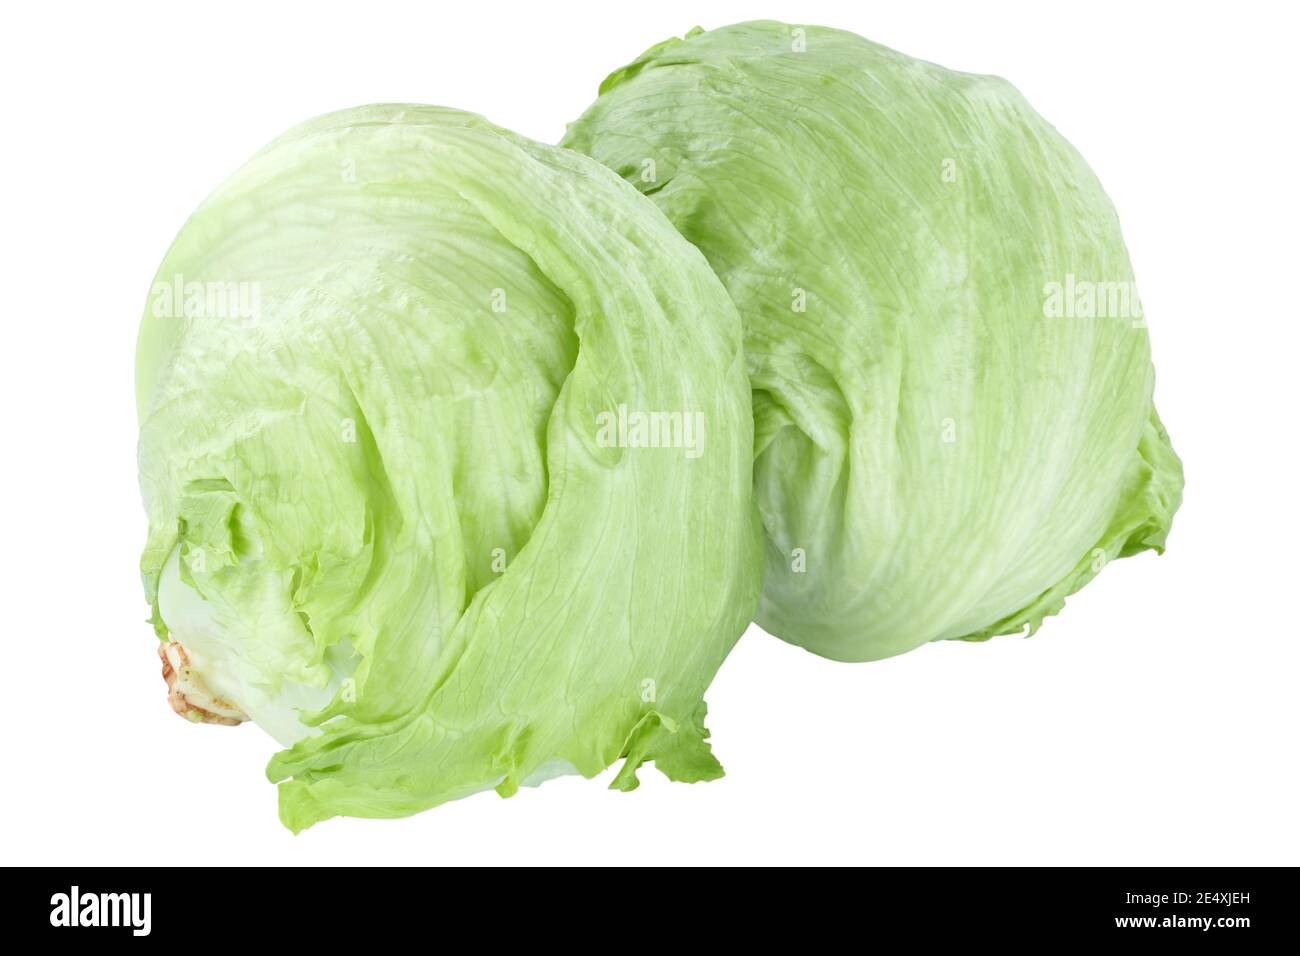 Eisbergsalat gesund essen Lebensmittel Gemüse isoliert auf einem weißen Hintergrund Stockfoto